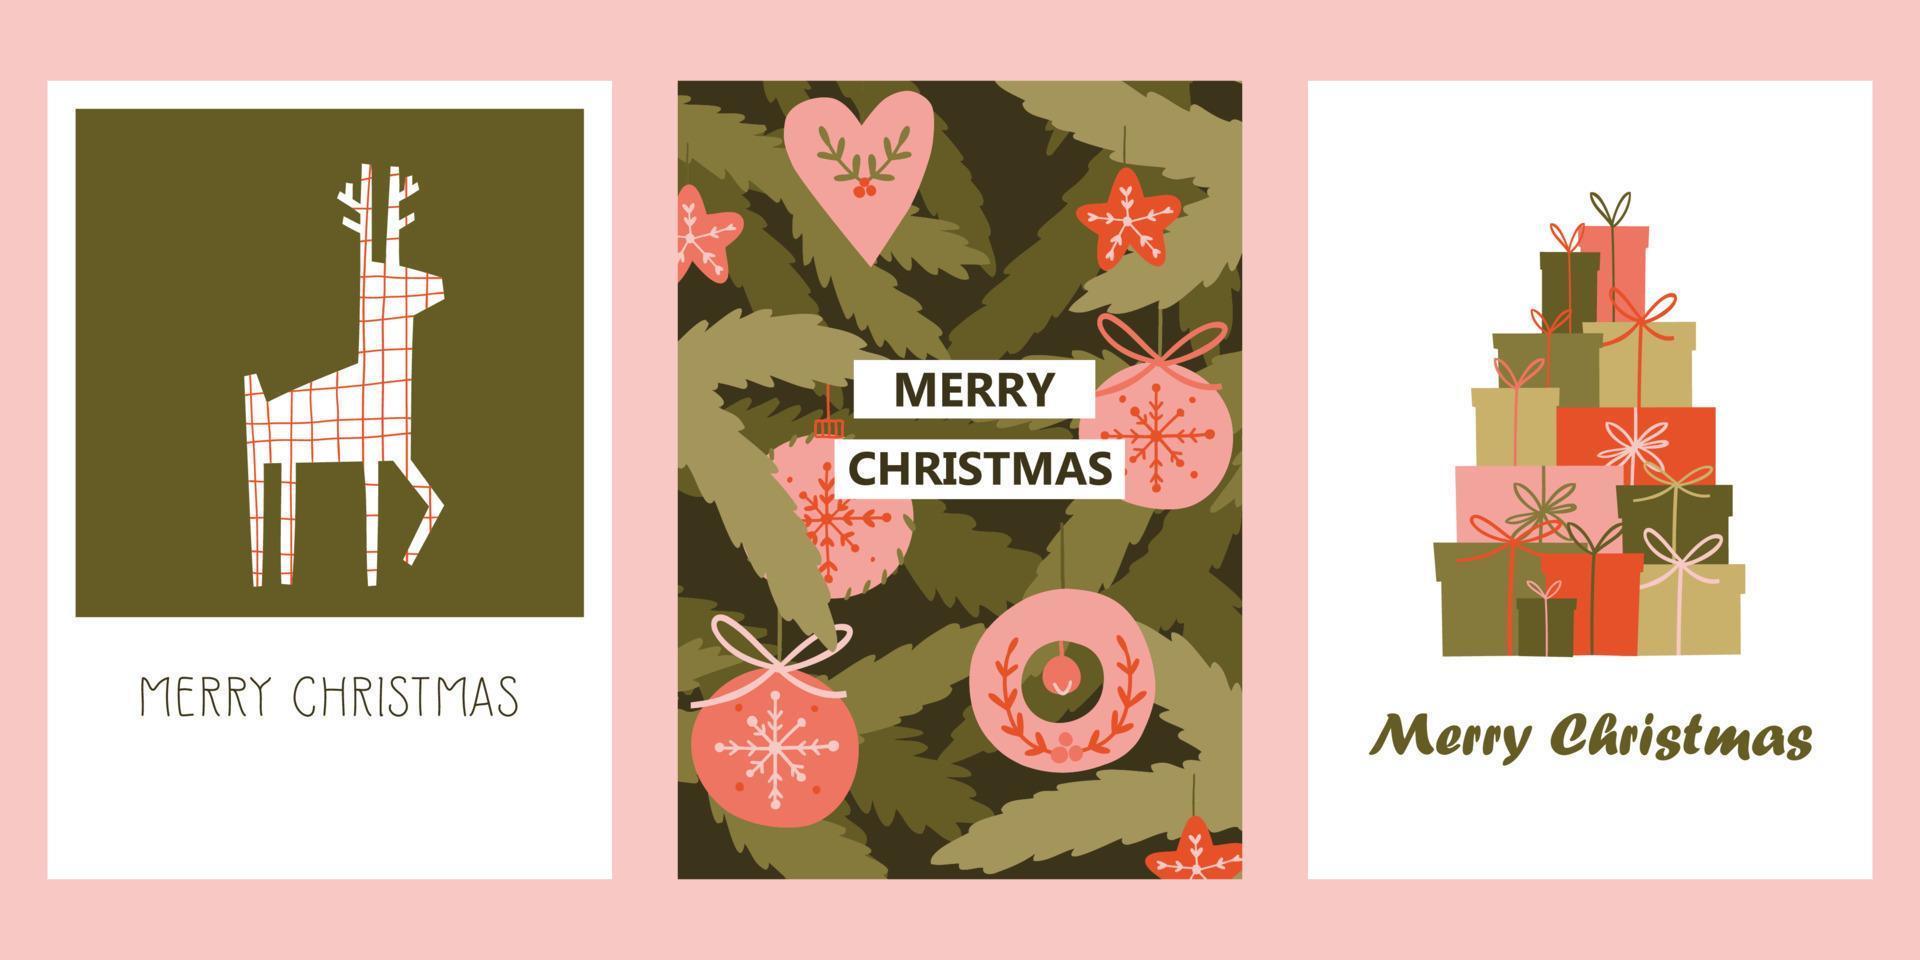 ambientado con tarjetas navideñas para felicitar a familiares y amigos. lindas tarjetas navideñas con ciervos, adornos para árboles de navidad y regalos. ilustración de dibujado a mano de vector de vacaciones.